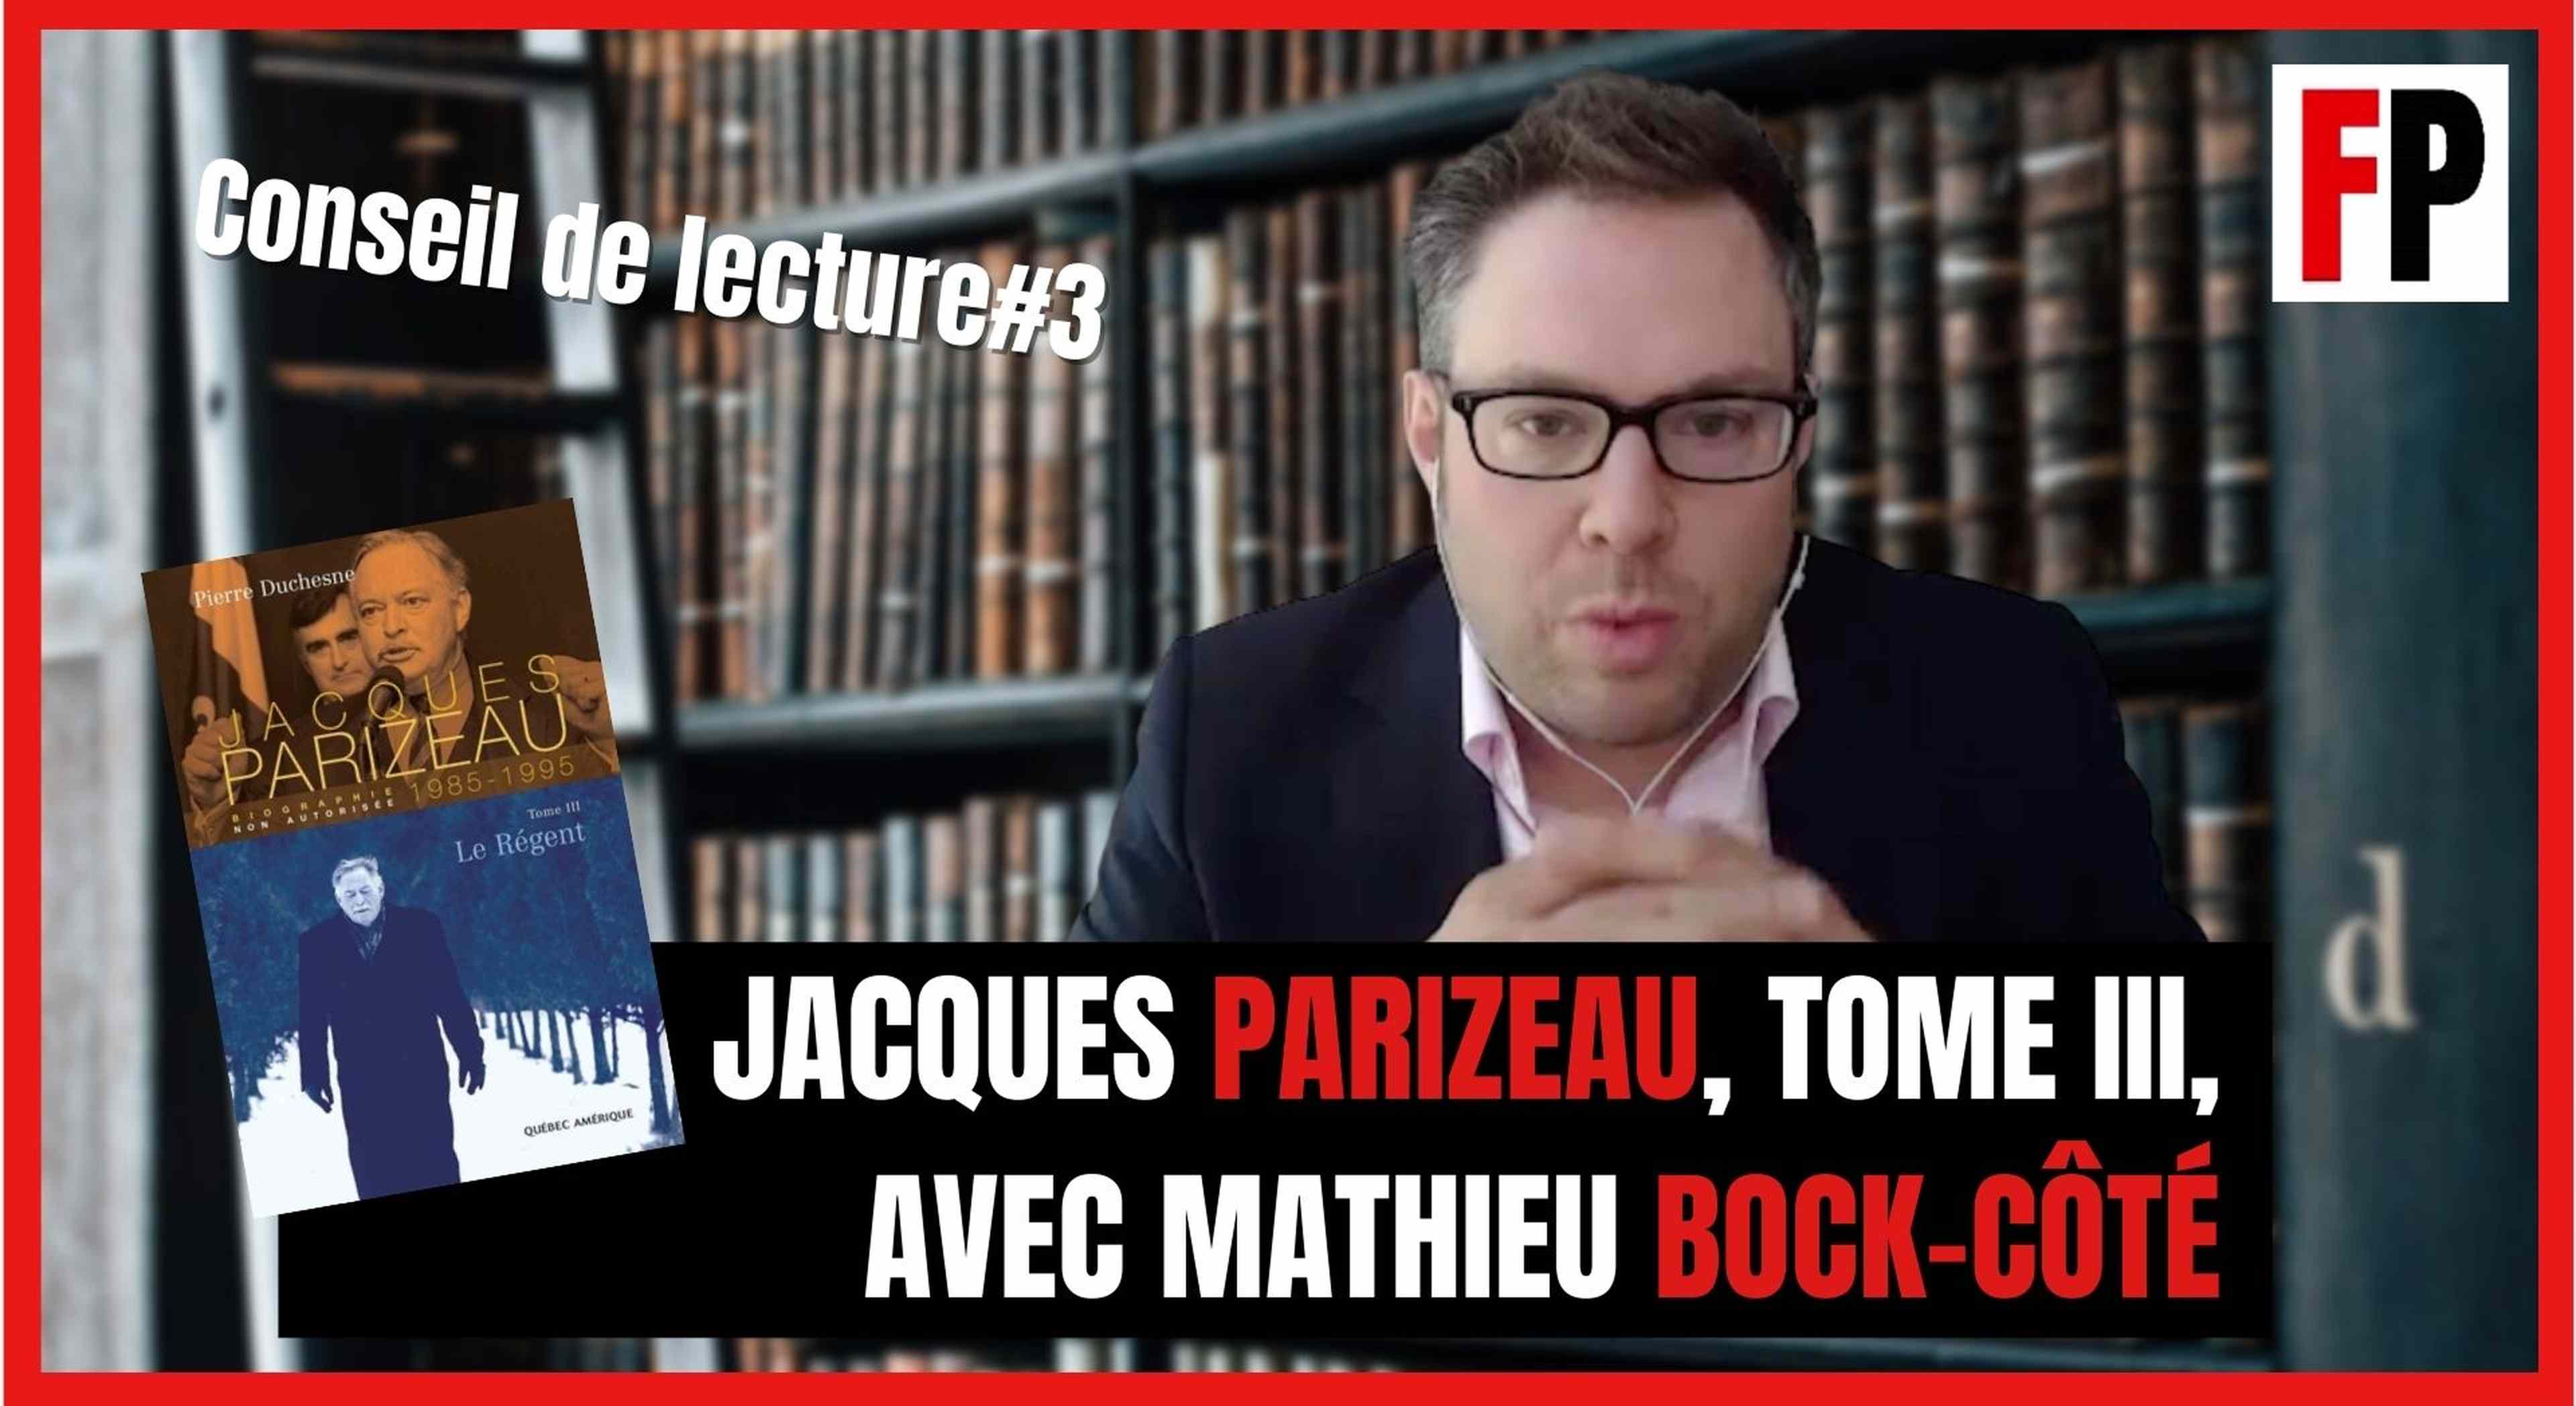 /2021/08/mathieu-bock-cote-jacques-parizeau-conseil-lecture